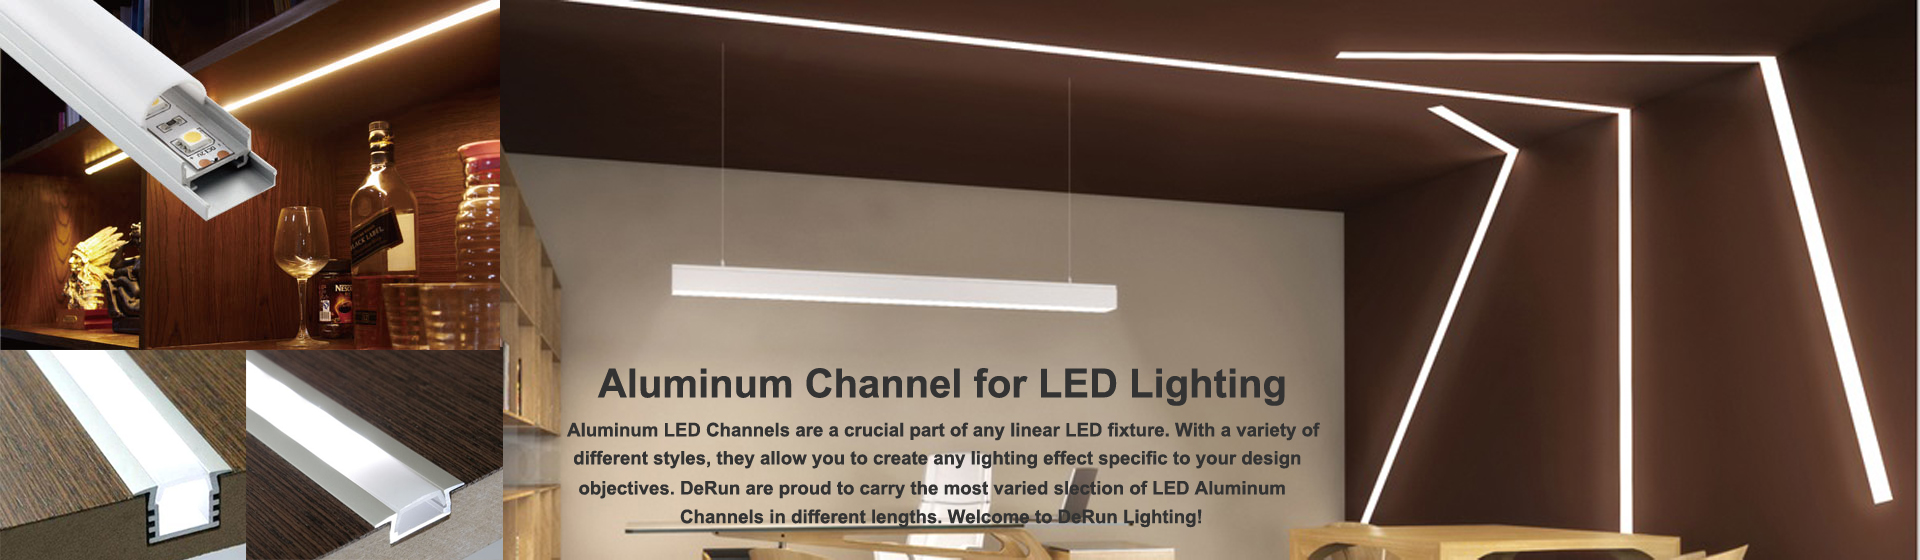 アルミニウムLEDチャンネル-LEDリニアライト